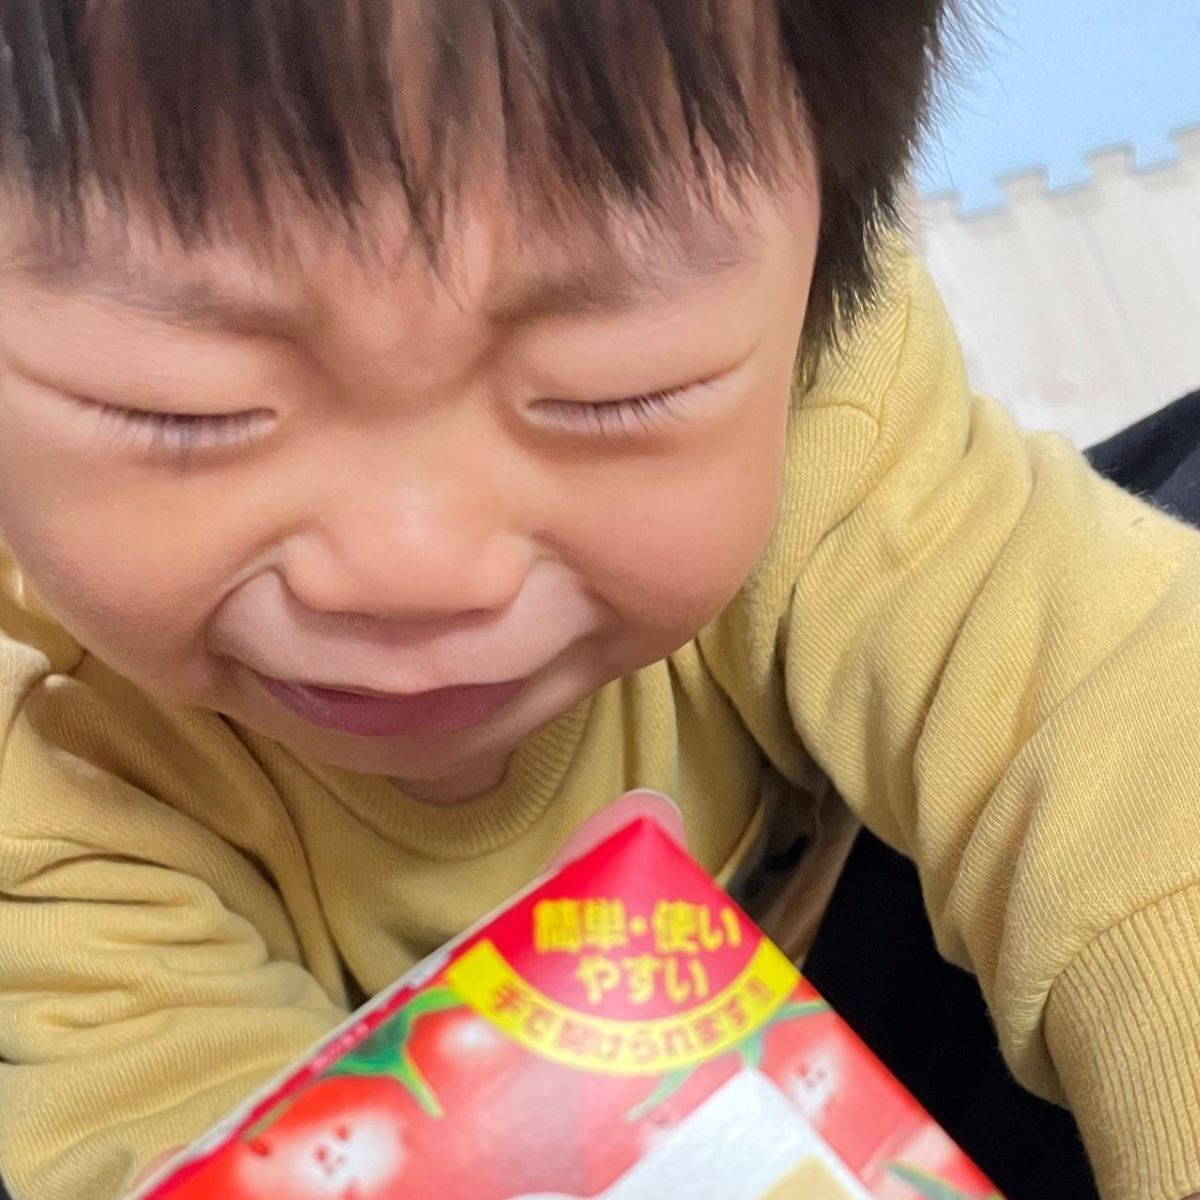 それ飲み物やない 1歳の男の子が コレ飲みたいって持ってきて泣いてる 写真に爆笑